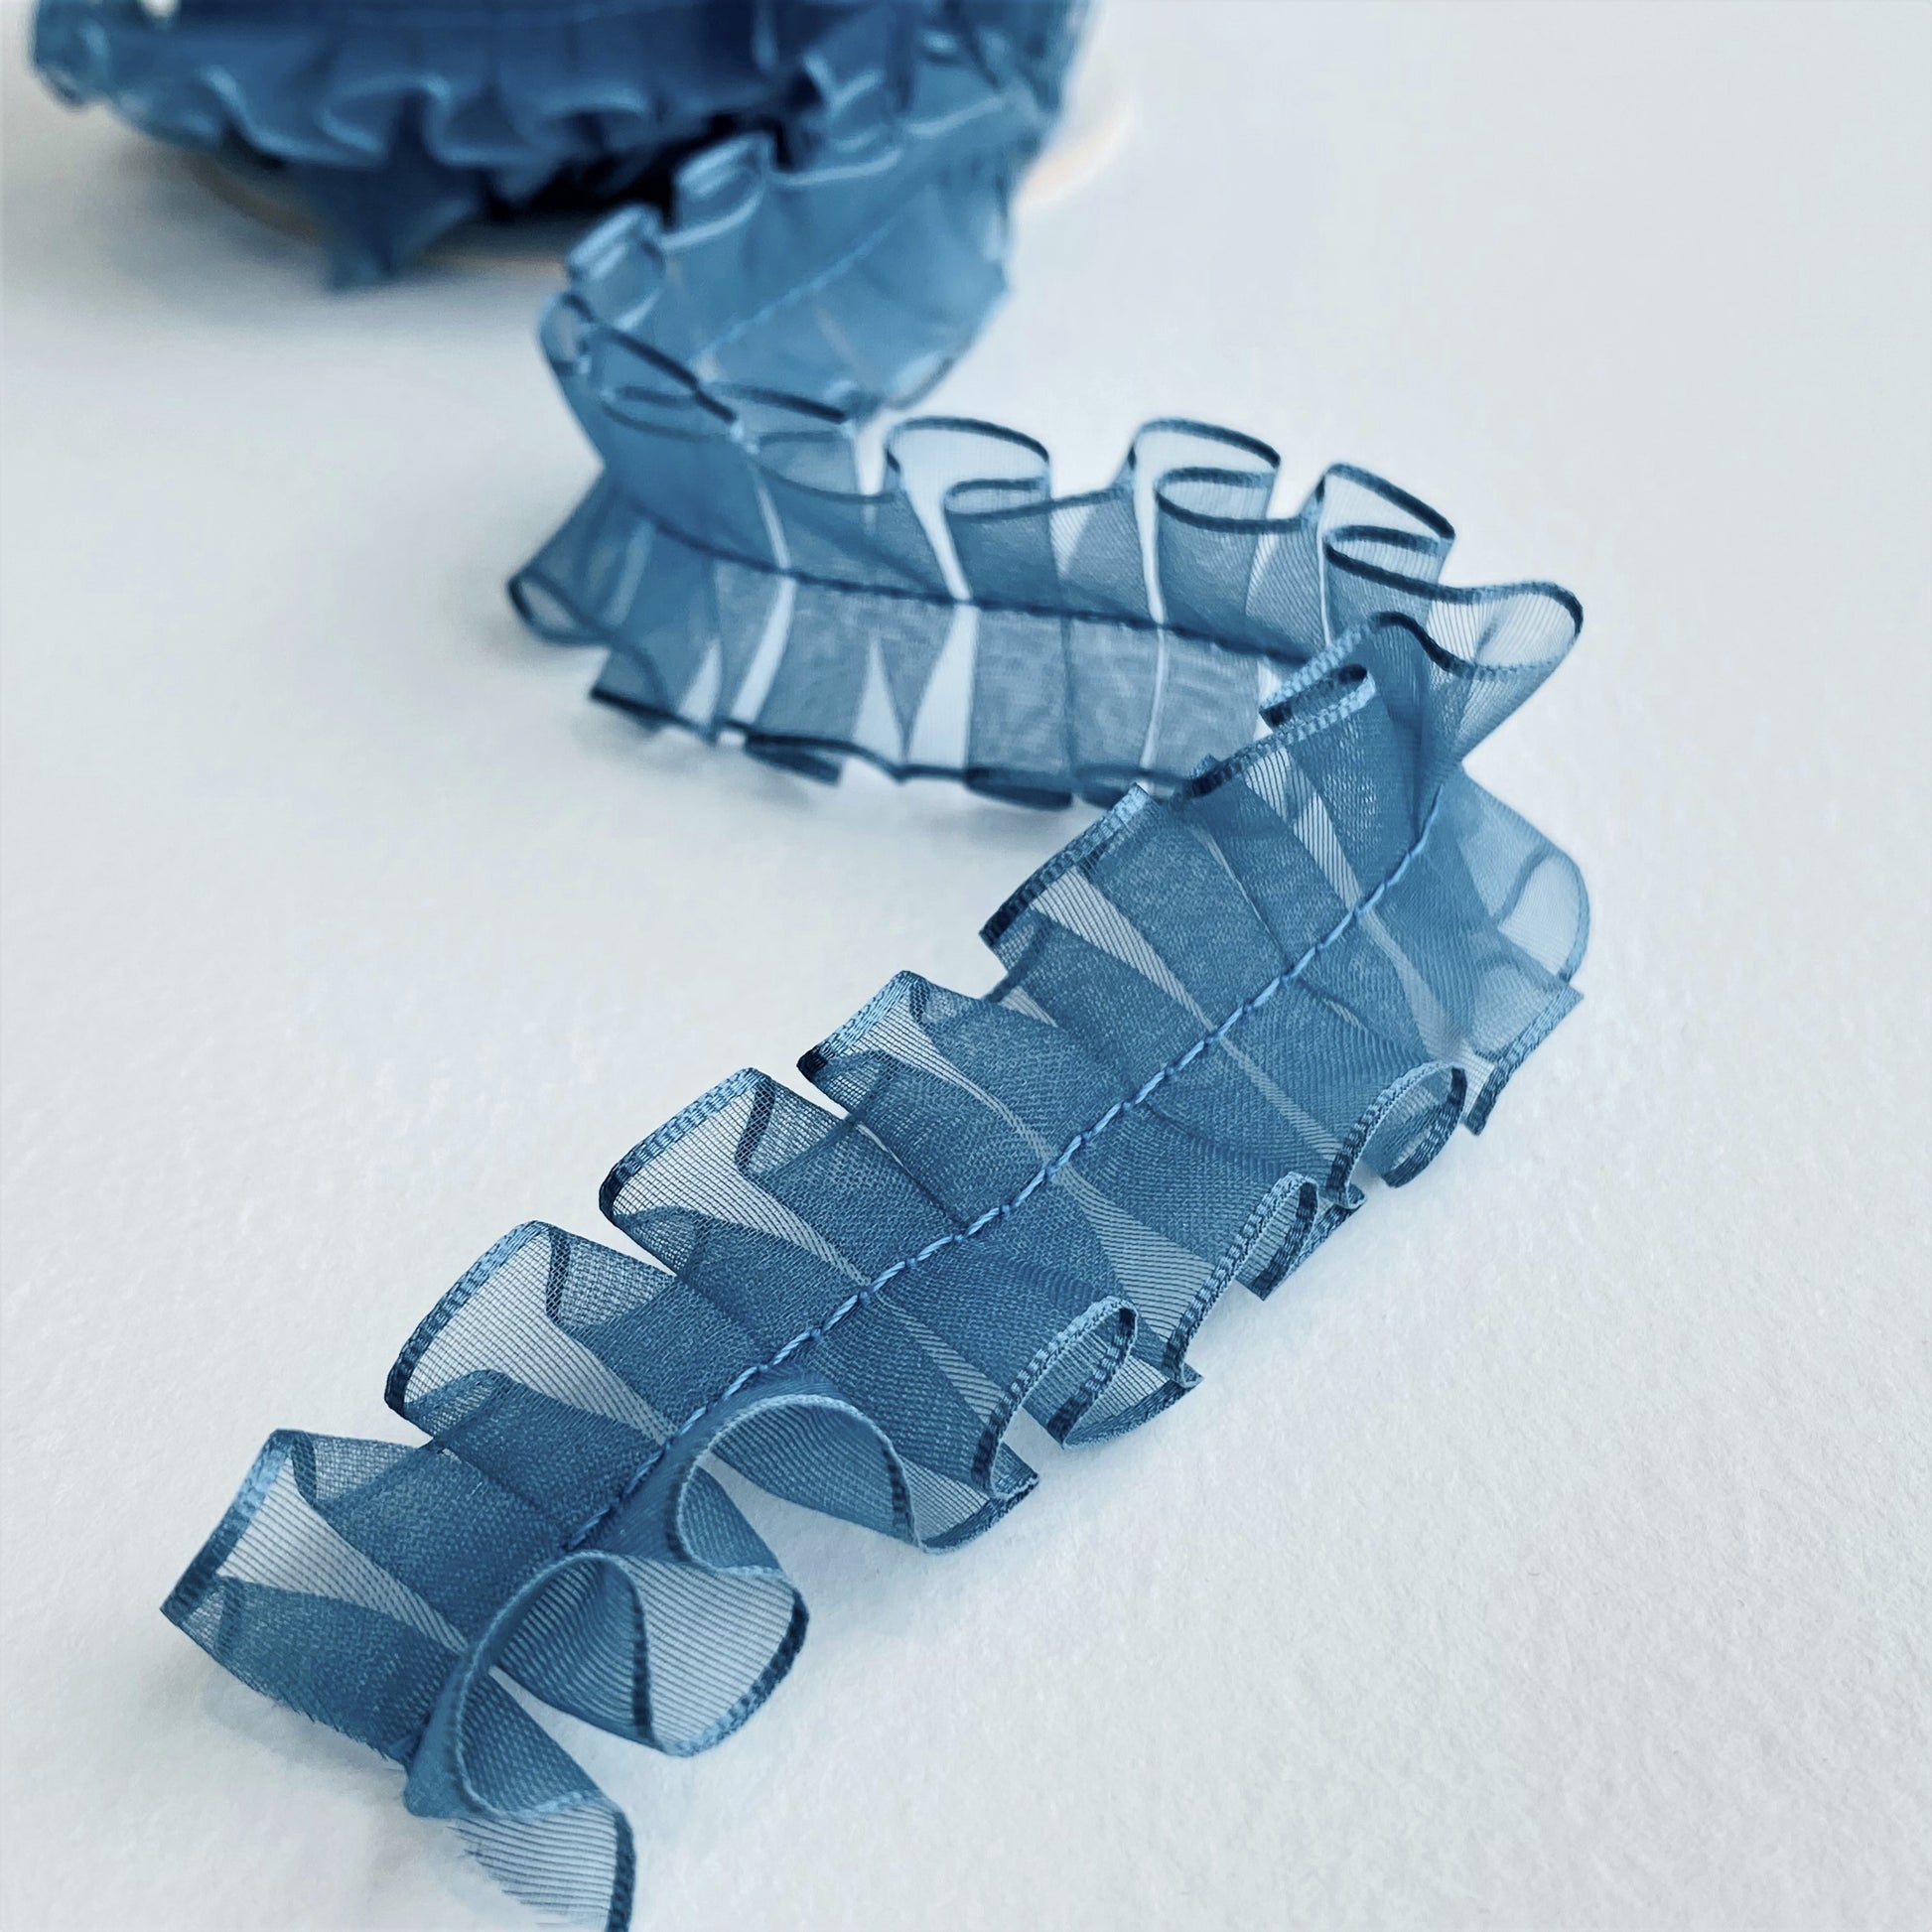 24mm Pleated Georgette ribbon by MOKUBA Japanese ribbon in blue